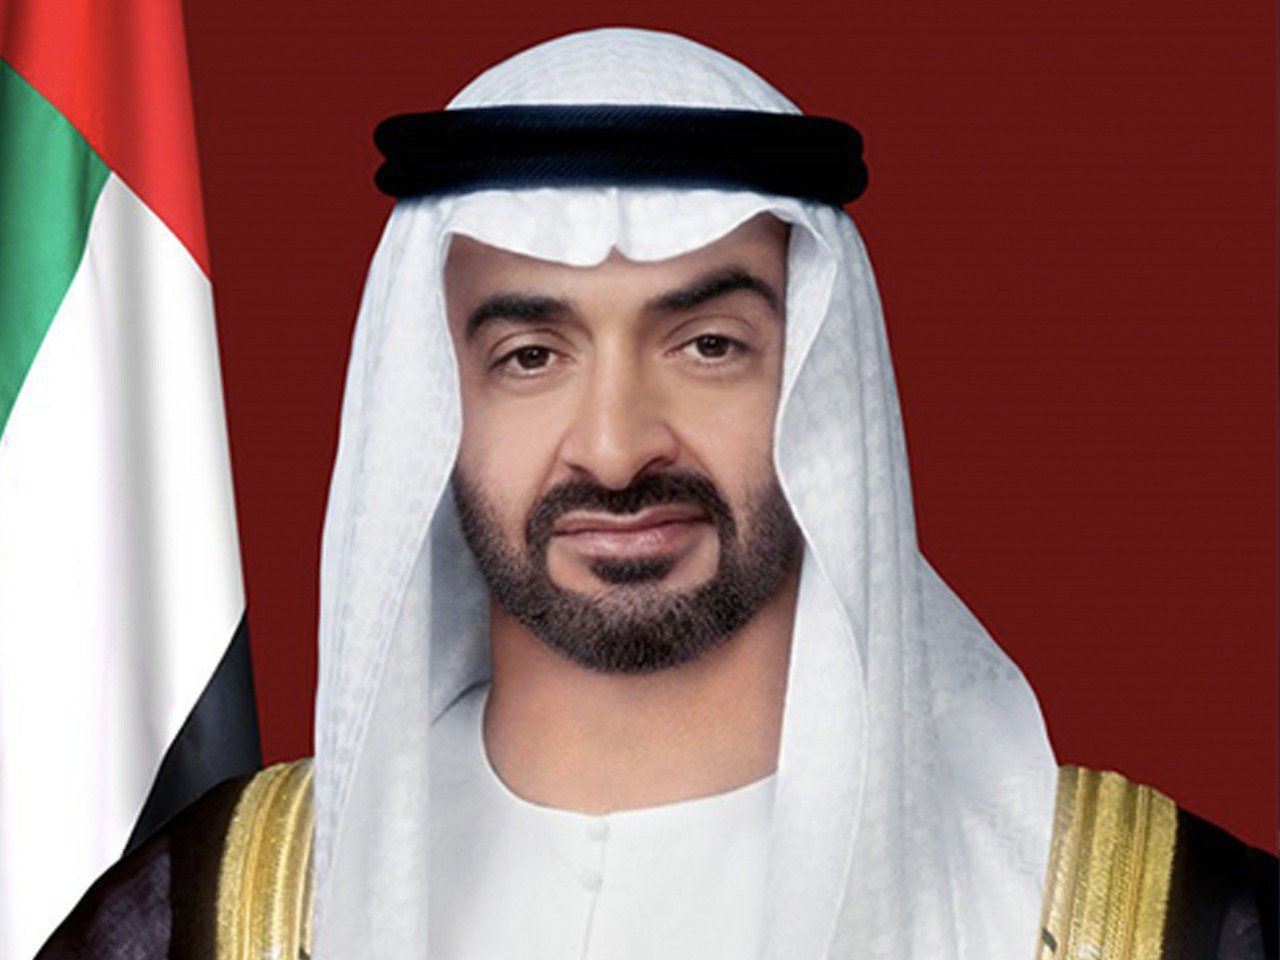 Sheikh Mohammad bin Zayed Al-Nahyan